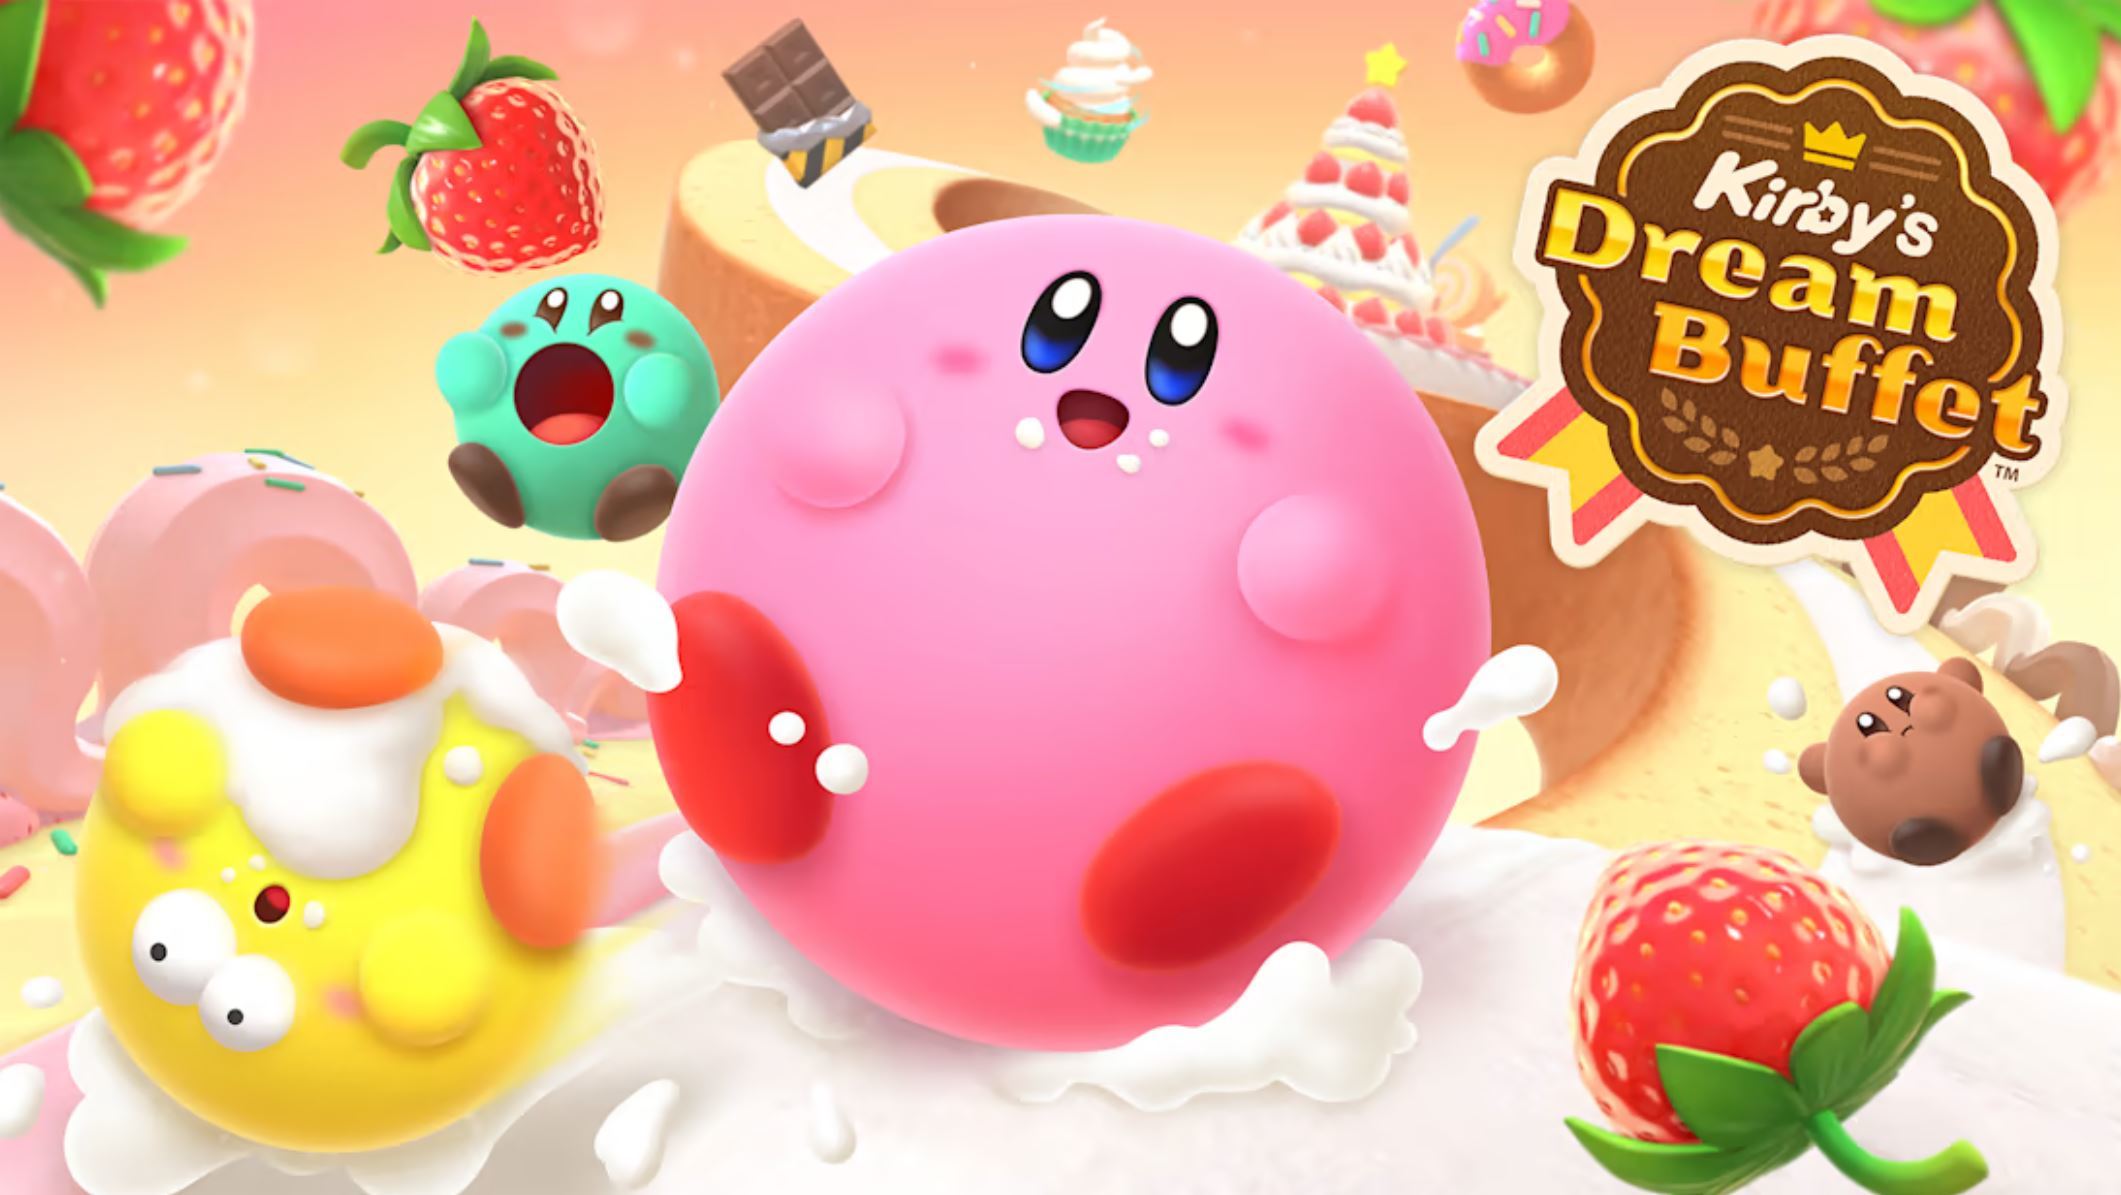 Kirby’s Dream Buffet komt volgende week uit